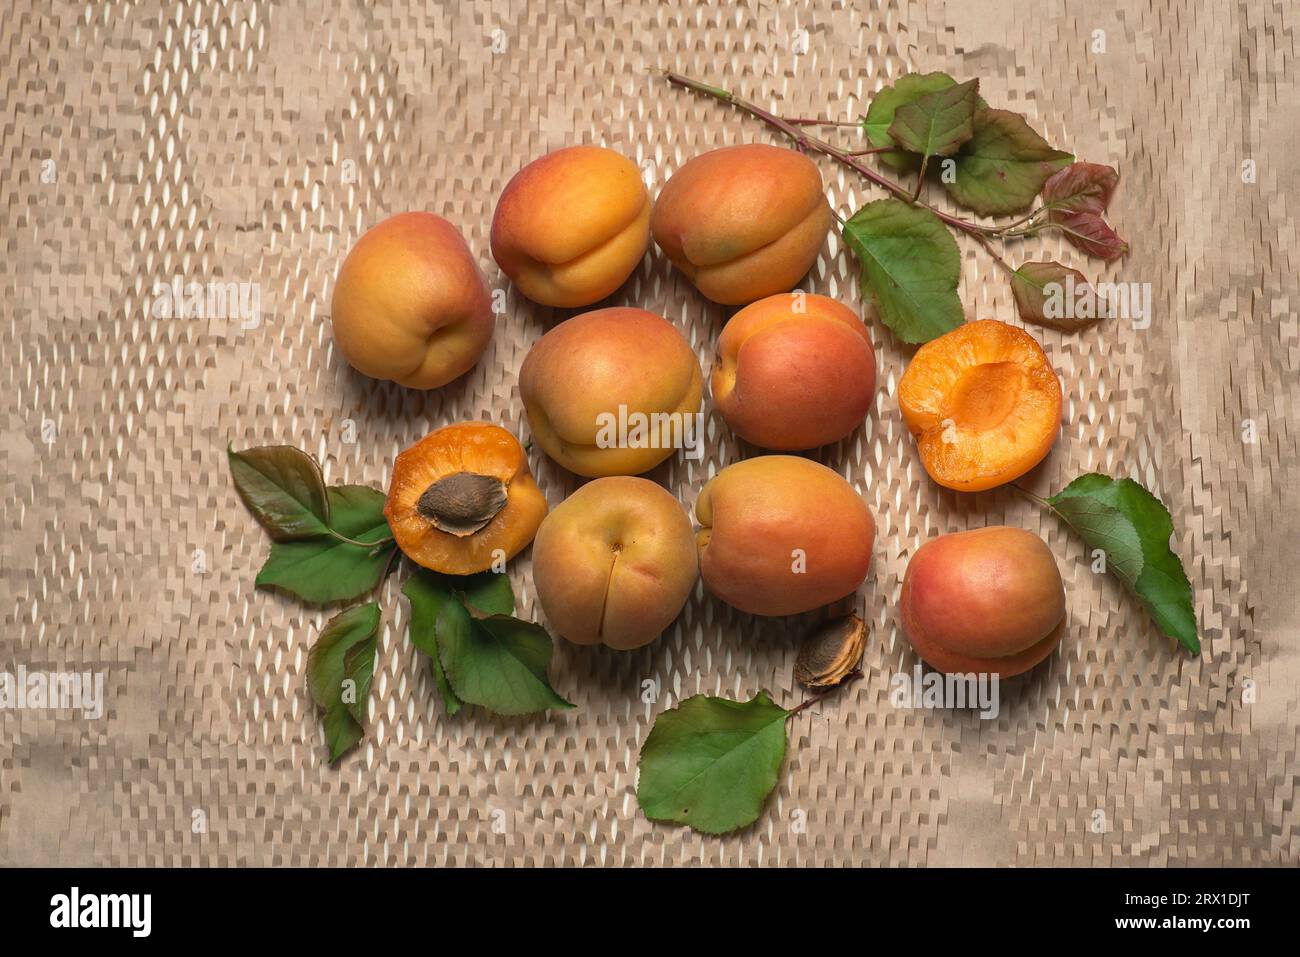 Abricots frais, mûrs et juteux sur un fond clair. Fruits entiers, avec feuilles, moitiés d'abricot Banque D'Images